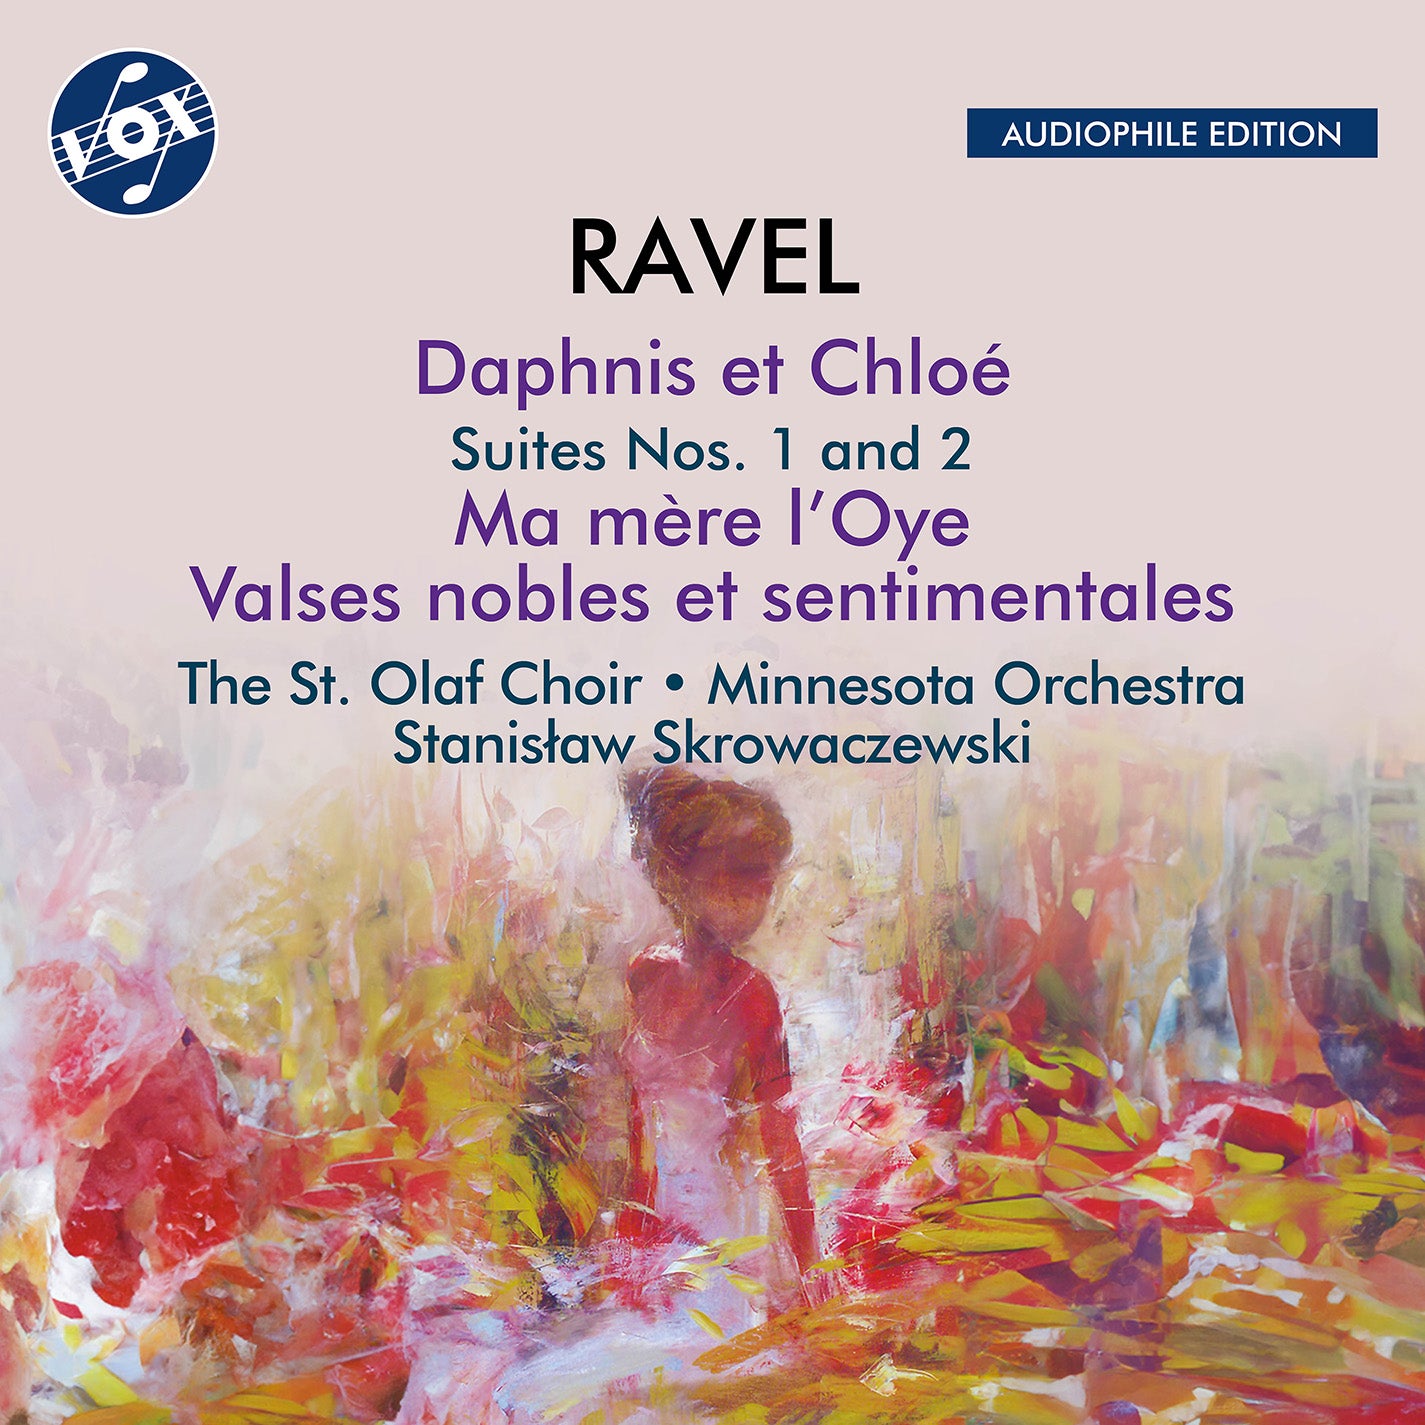 Ravel: Works for Orchestra / Skrowaczewski, Minnesota Orchestra